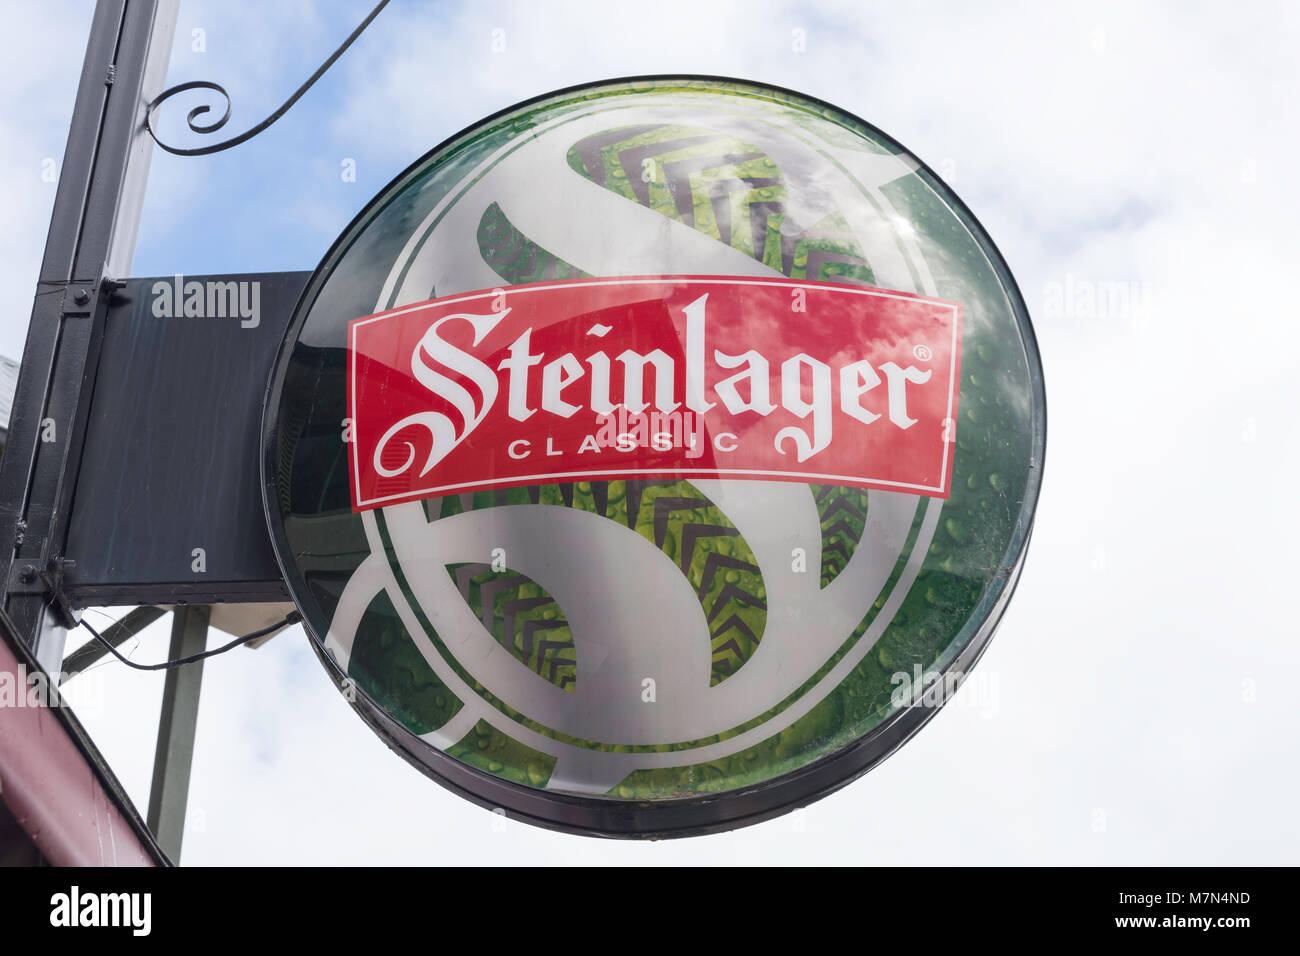 New Zealand's Classic Bière Steinlager en néon, Rue Lavaud, Akaroa, la péninsule de Banks, région de Canterbury, Nouvelle-Zélande Banque D'Images